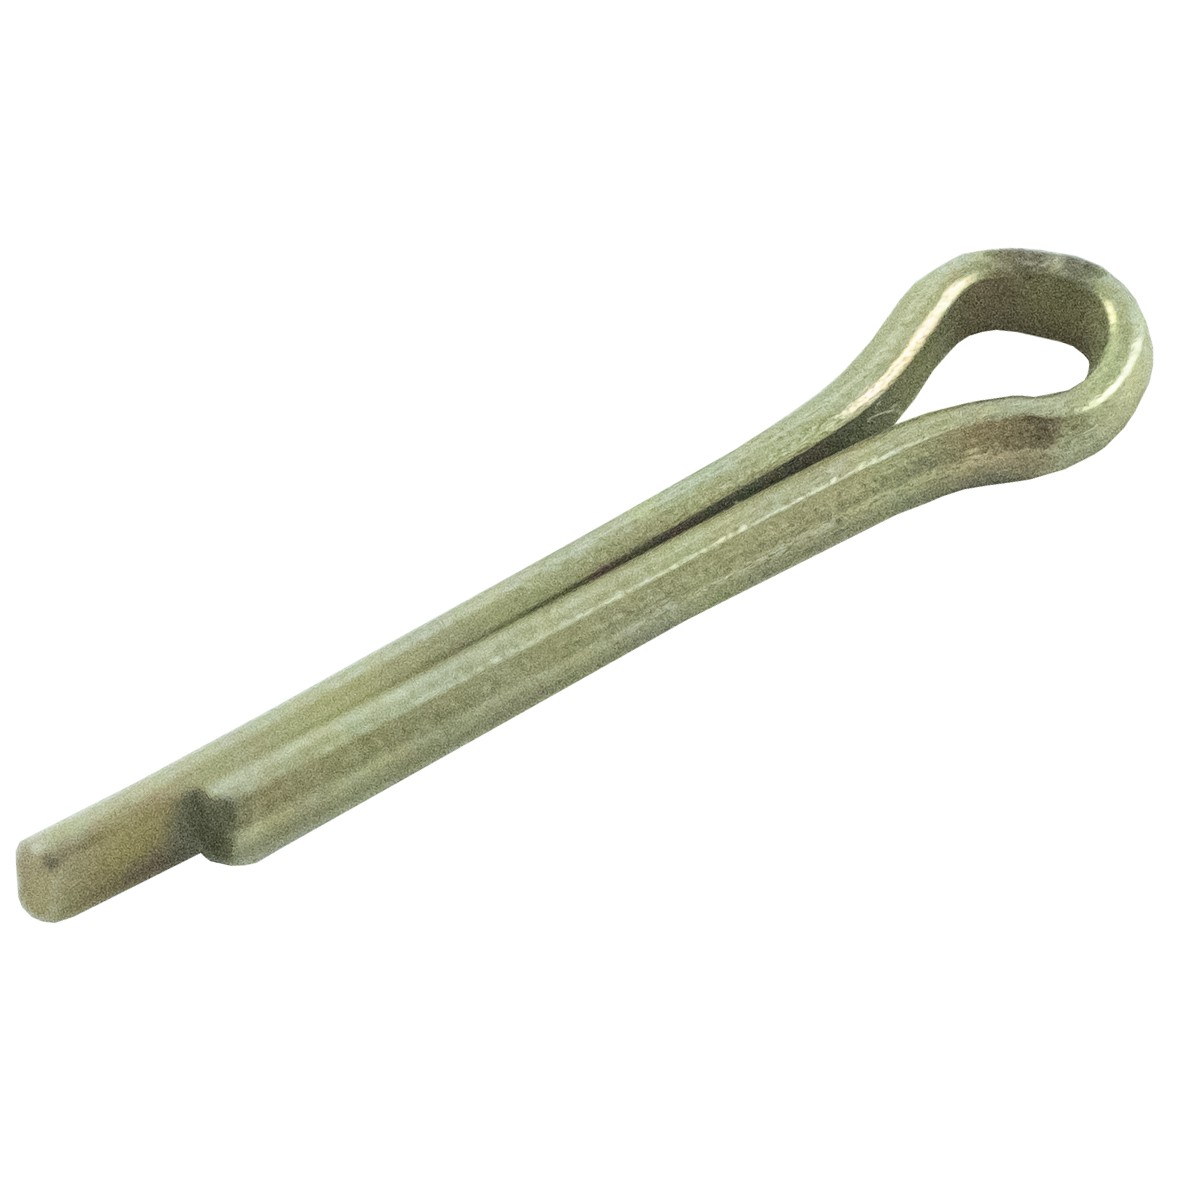 Cotter pin for 23 x 2 mm bolt, handbrake lever VST MT180, 05200125015